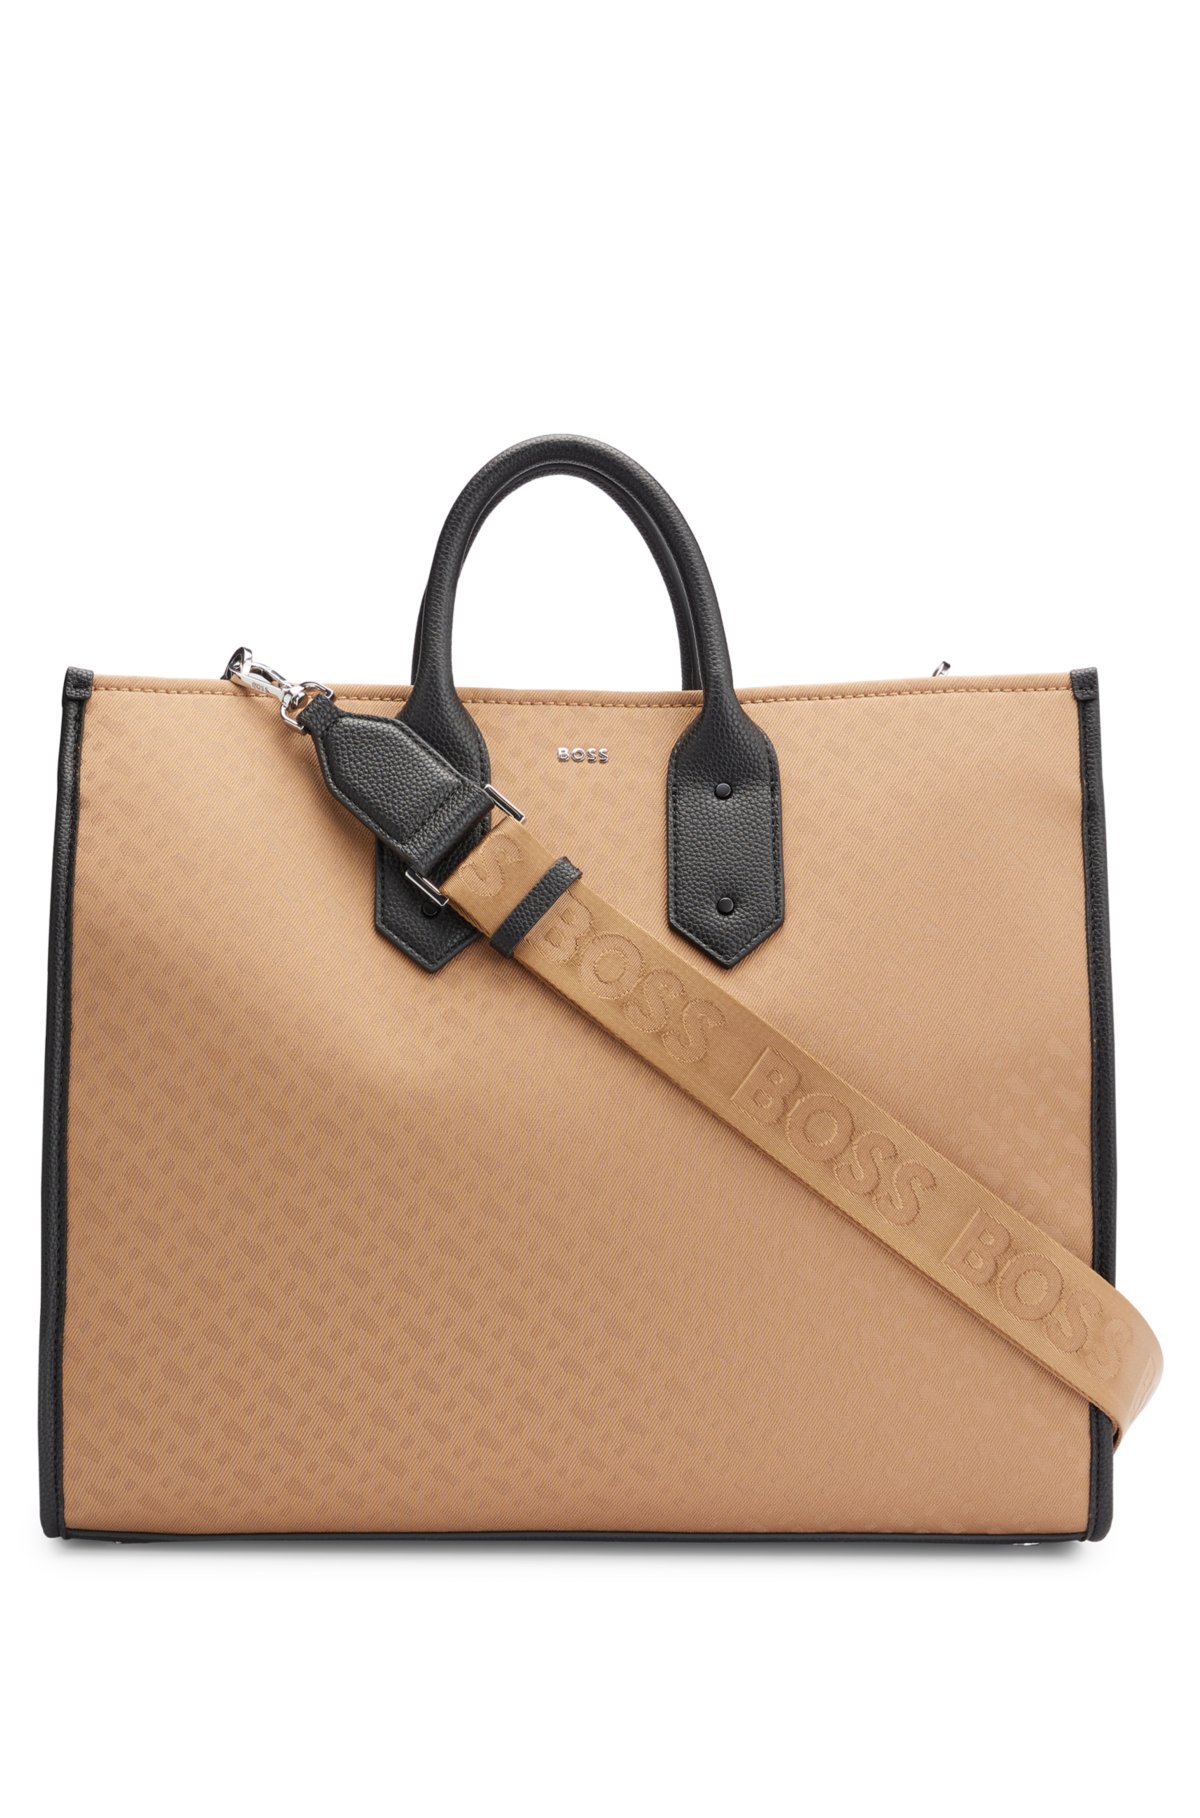 Louis Vuitton Brown Leather Monogram Detachable Strap Dustbag Inc. Bag